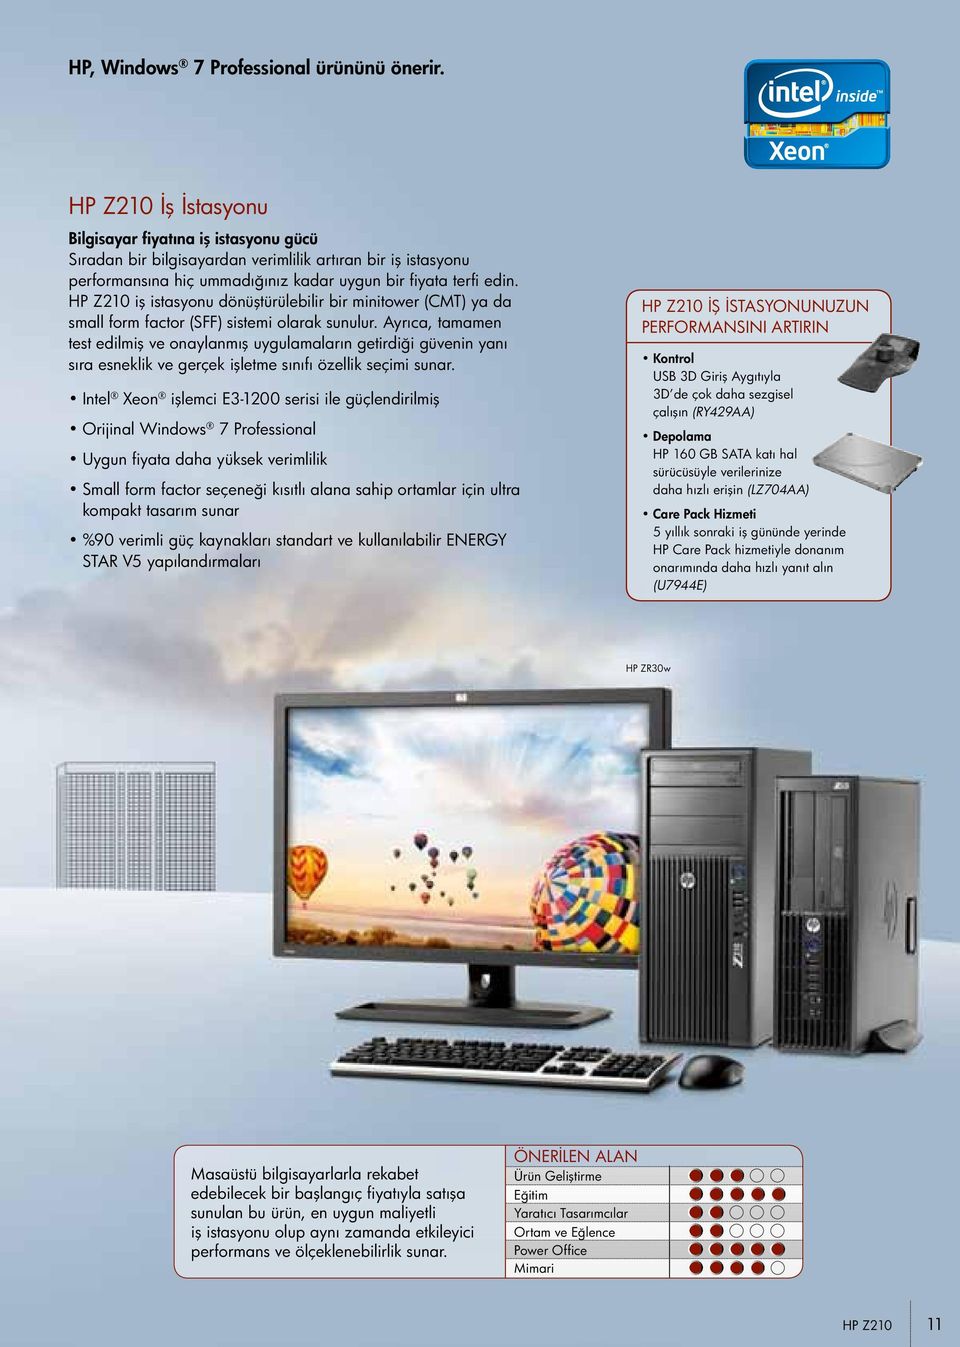 HP Z210 iş istasyonu dönüştürülebilir bir minitower (CMT) ya da small form factor (SFF) sistemi olarak sunulur.